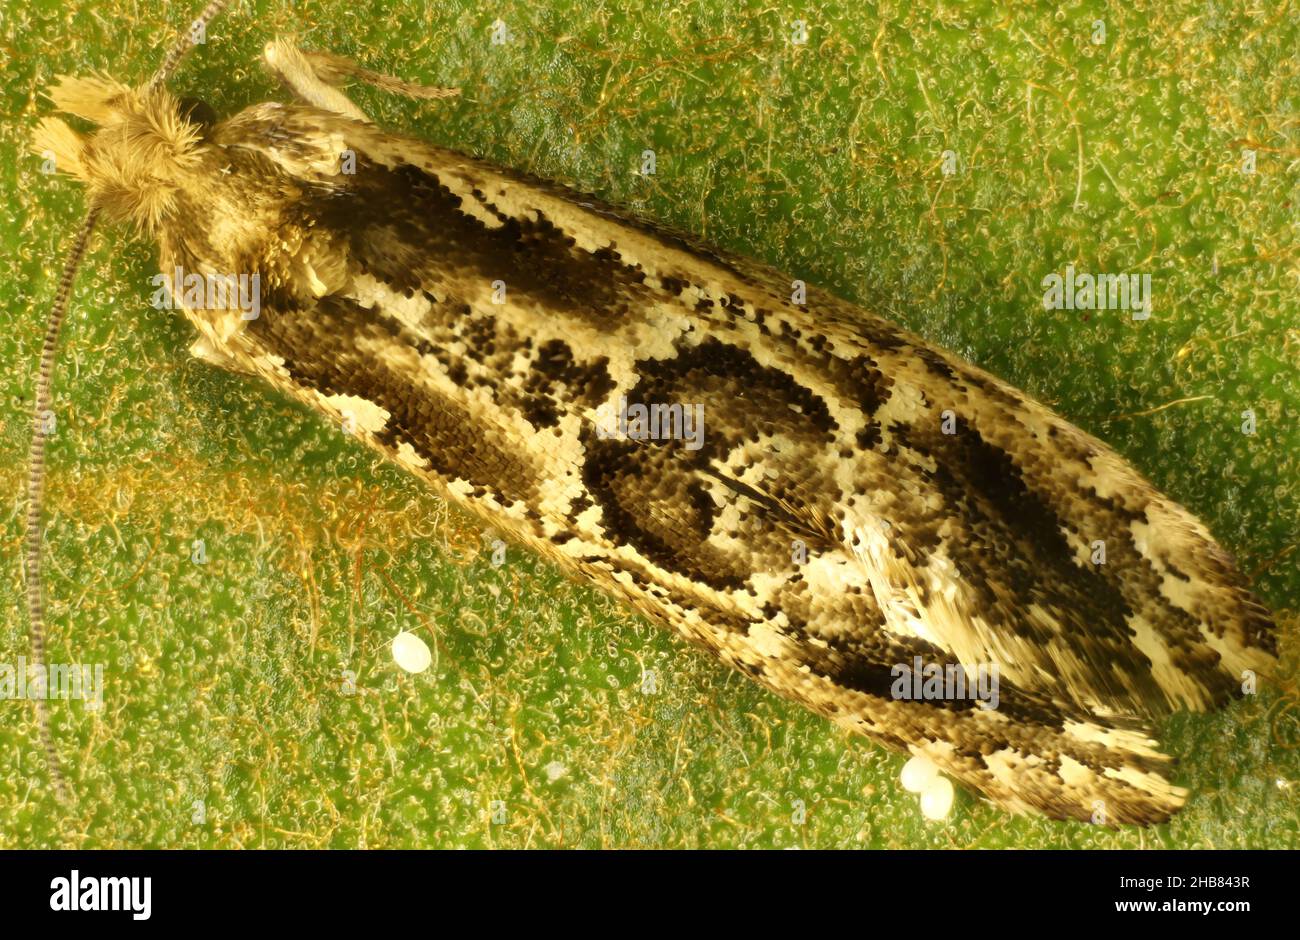 Vista macro dorsal de la hembra, la ropa que pone el huevo Moth (Moerarchis inconcisella) y el huevo, Australia del Sur Foto de stock